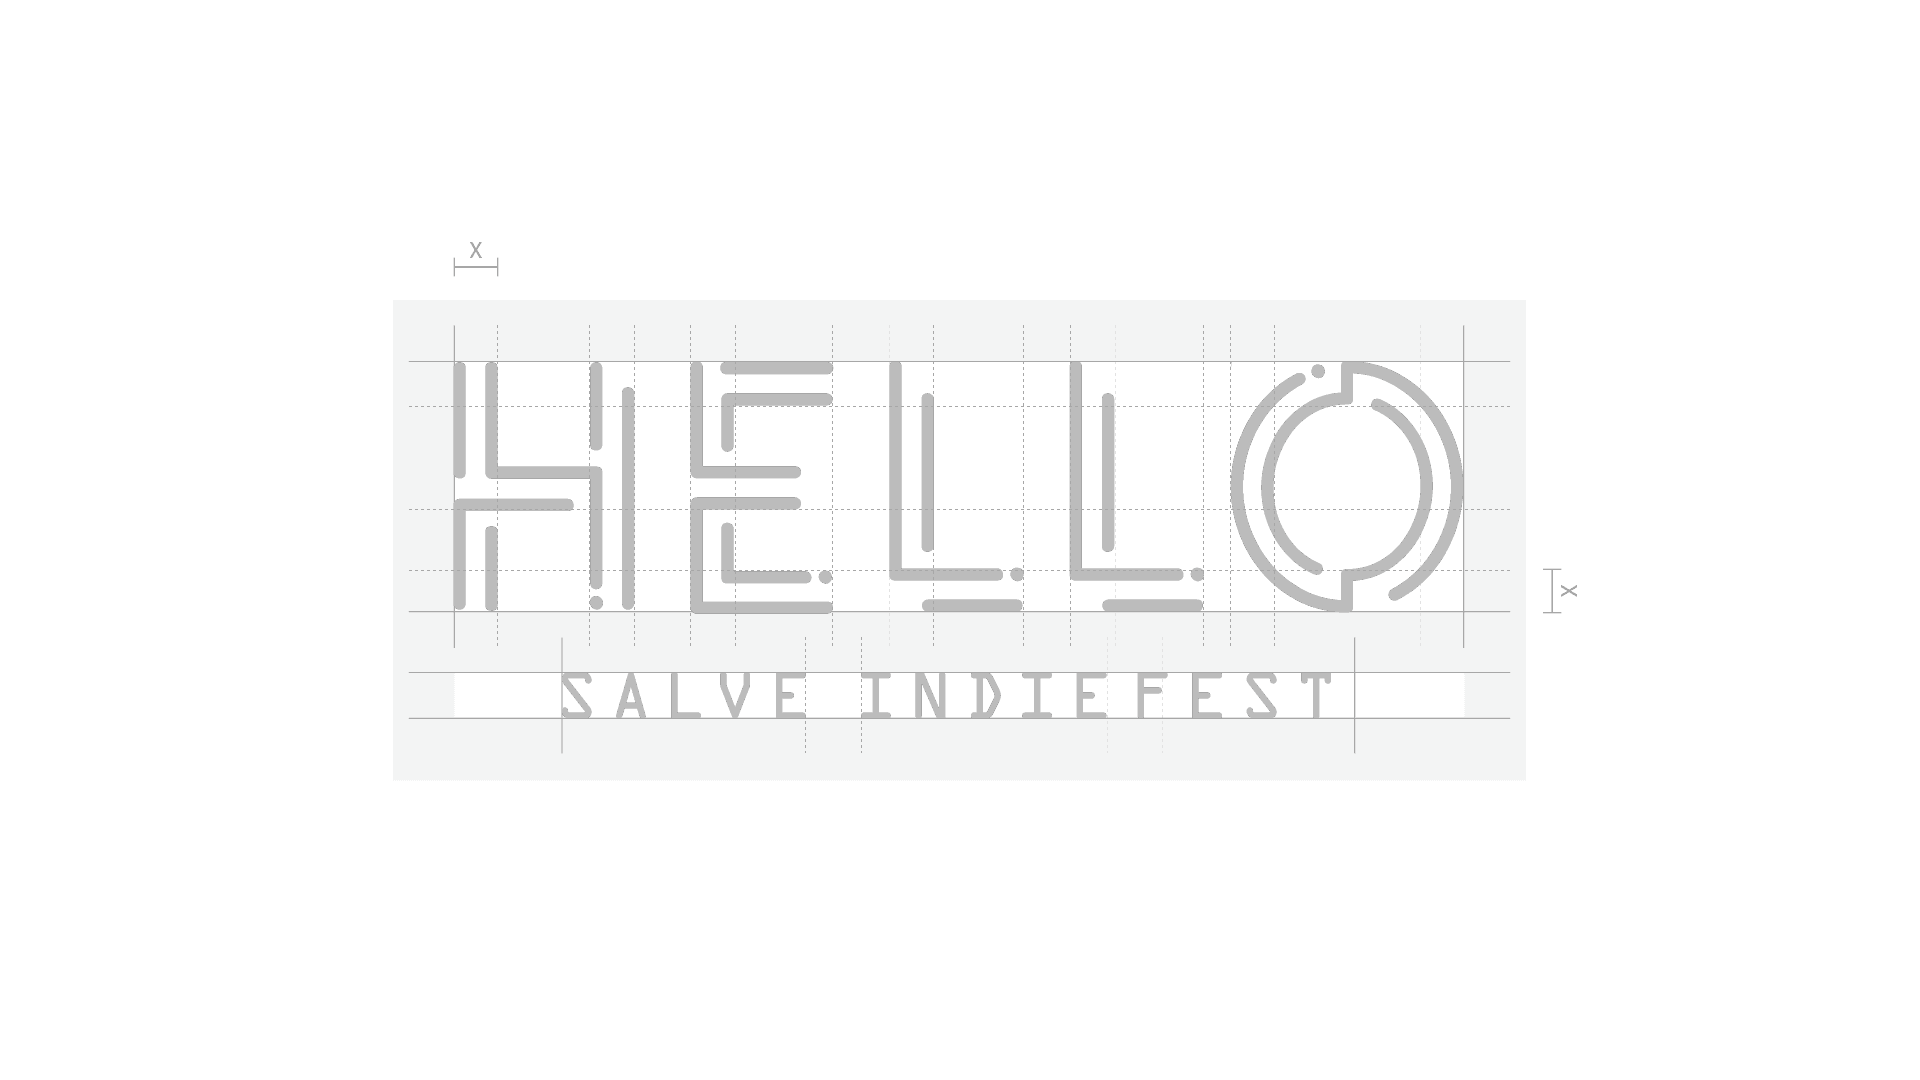 HELLO Fest | Comunicazione integrata | Agenzia ORA